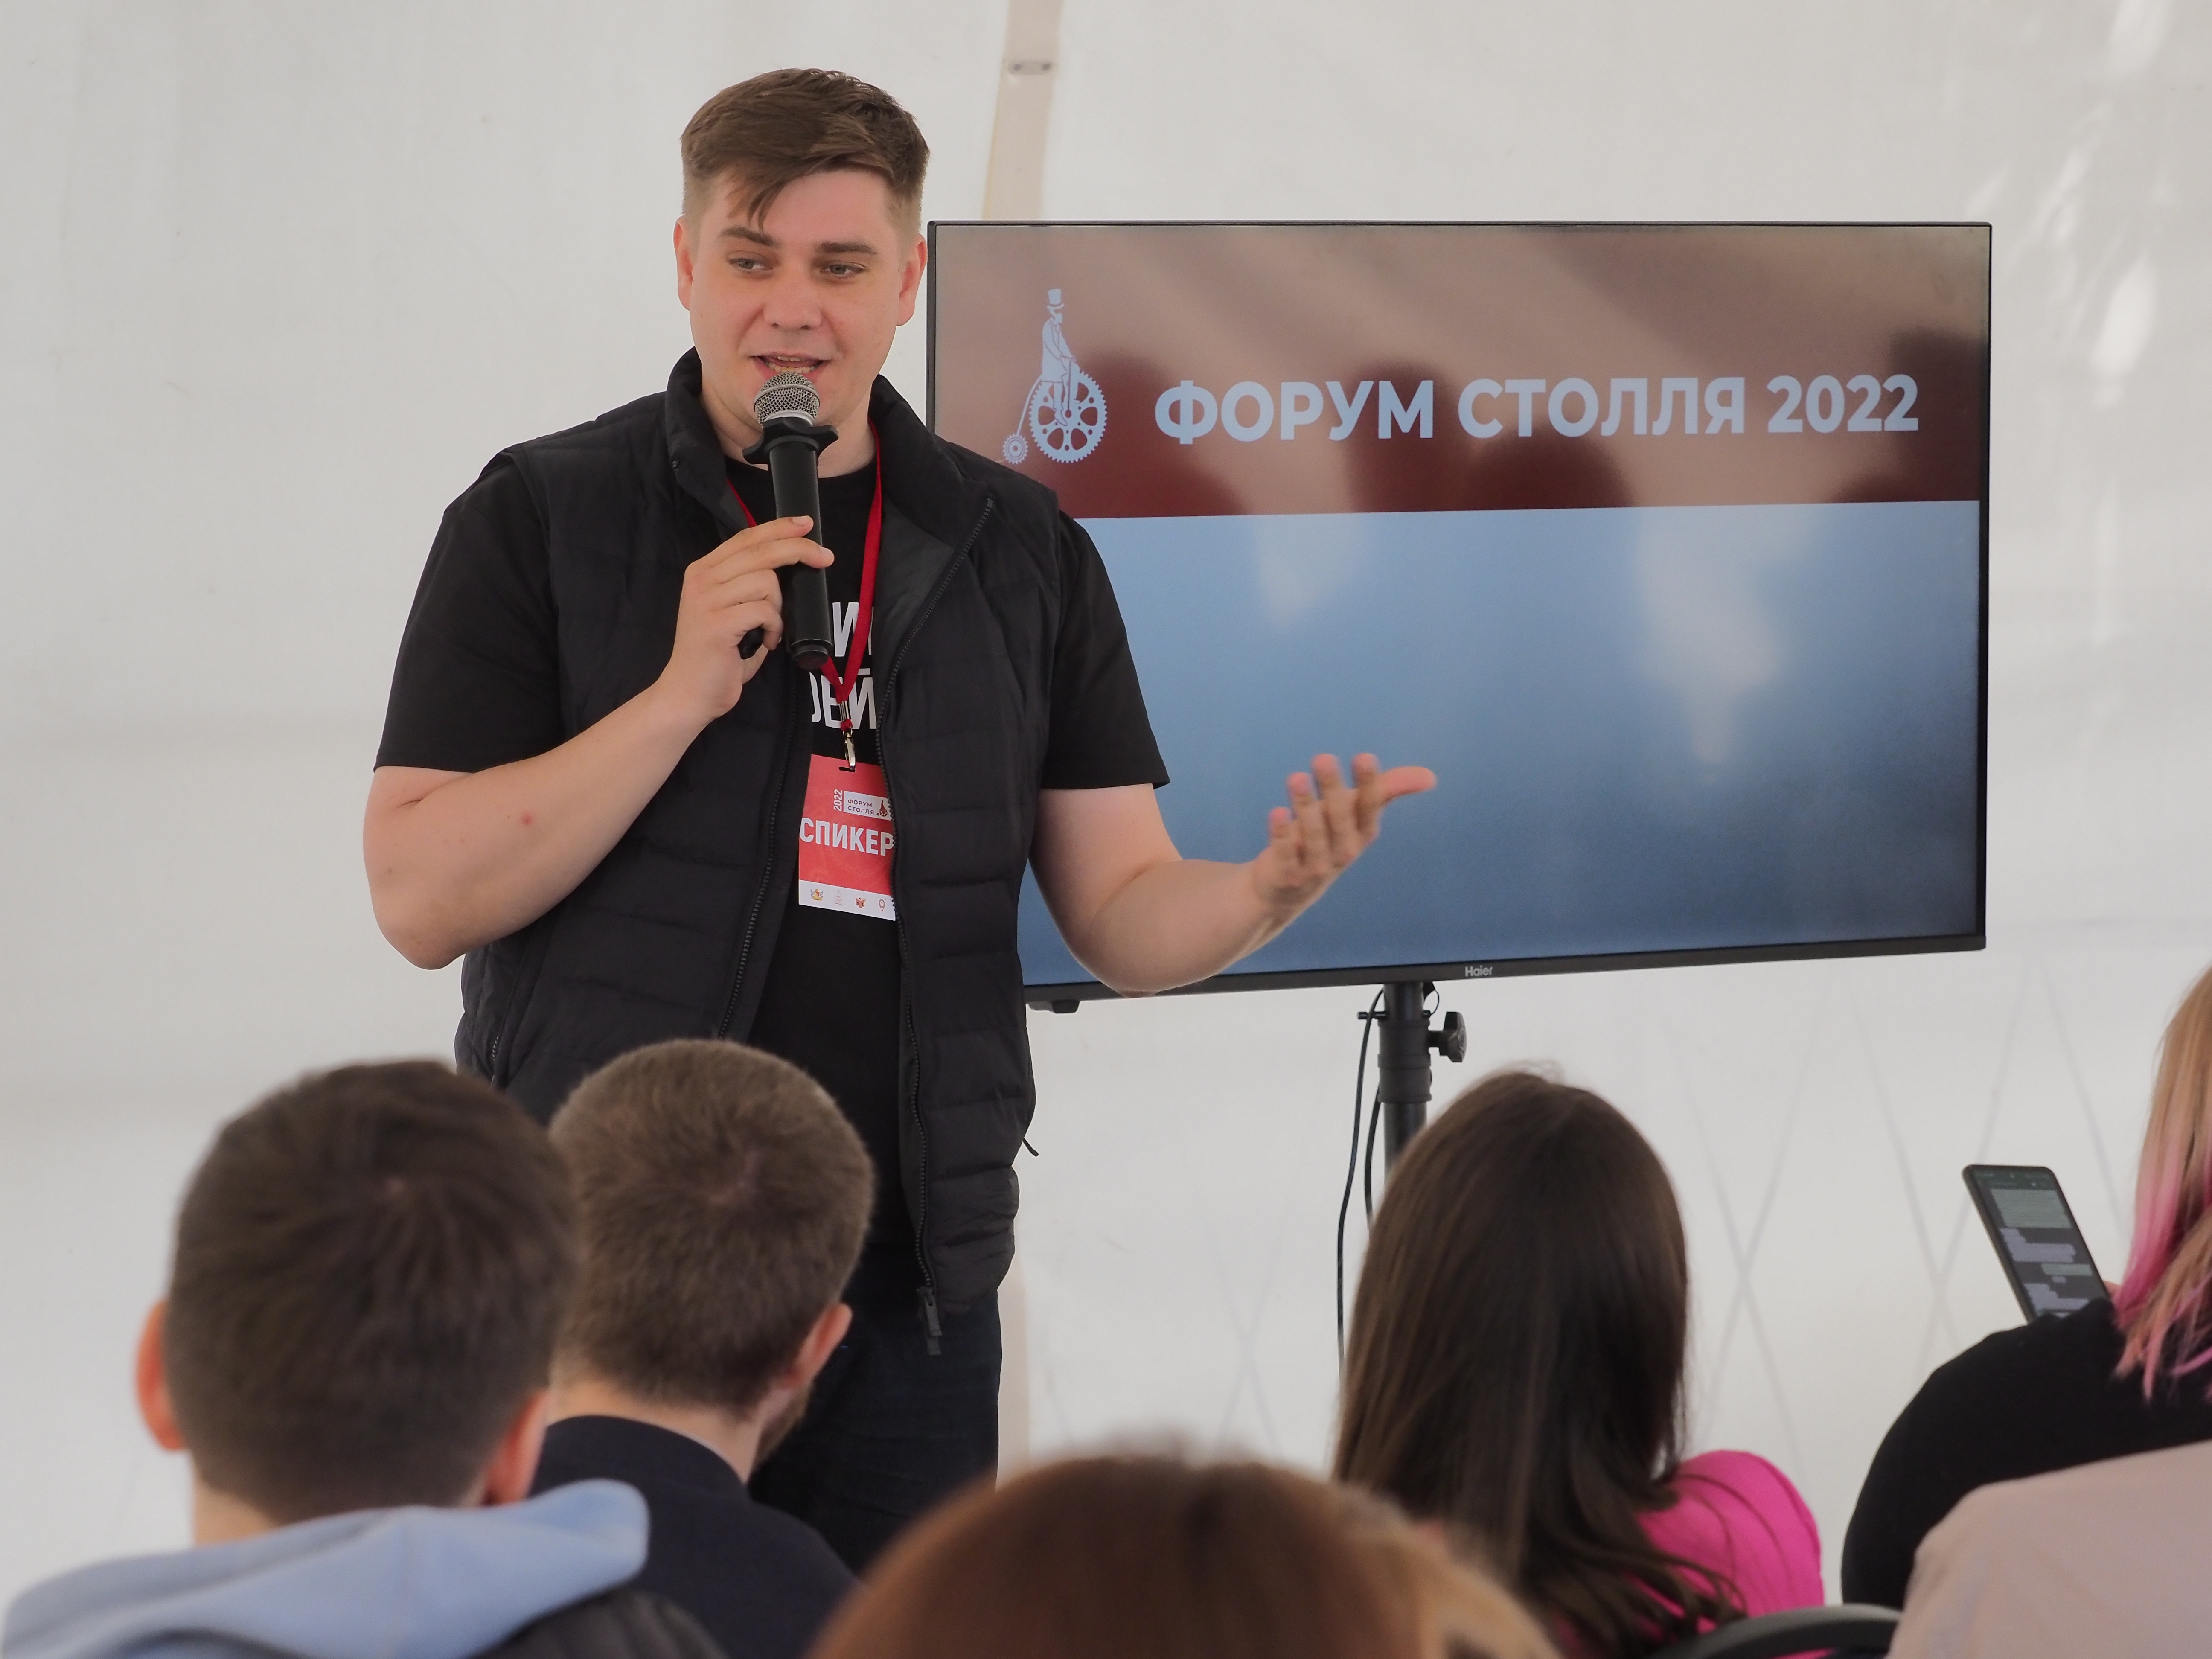 Форум Столля 2022: итоги одного из главных бизнес-событий региона